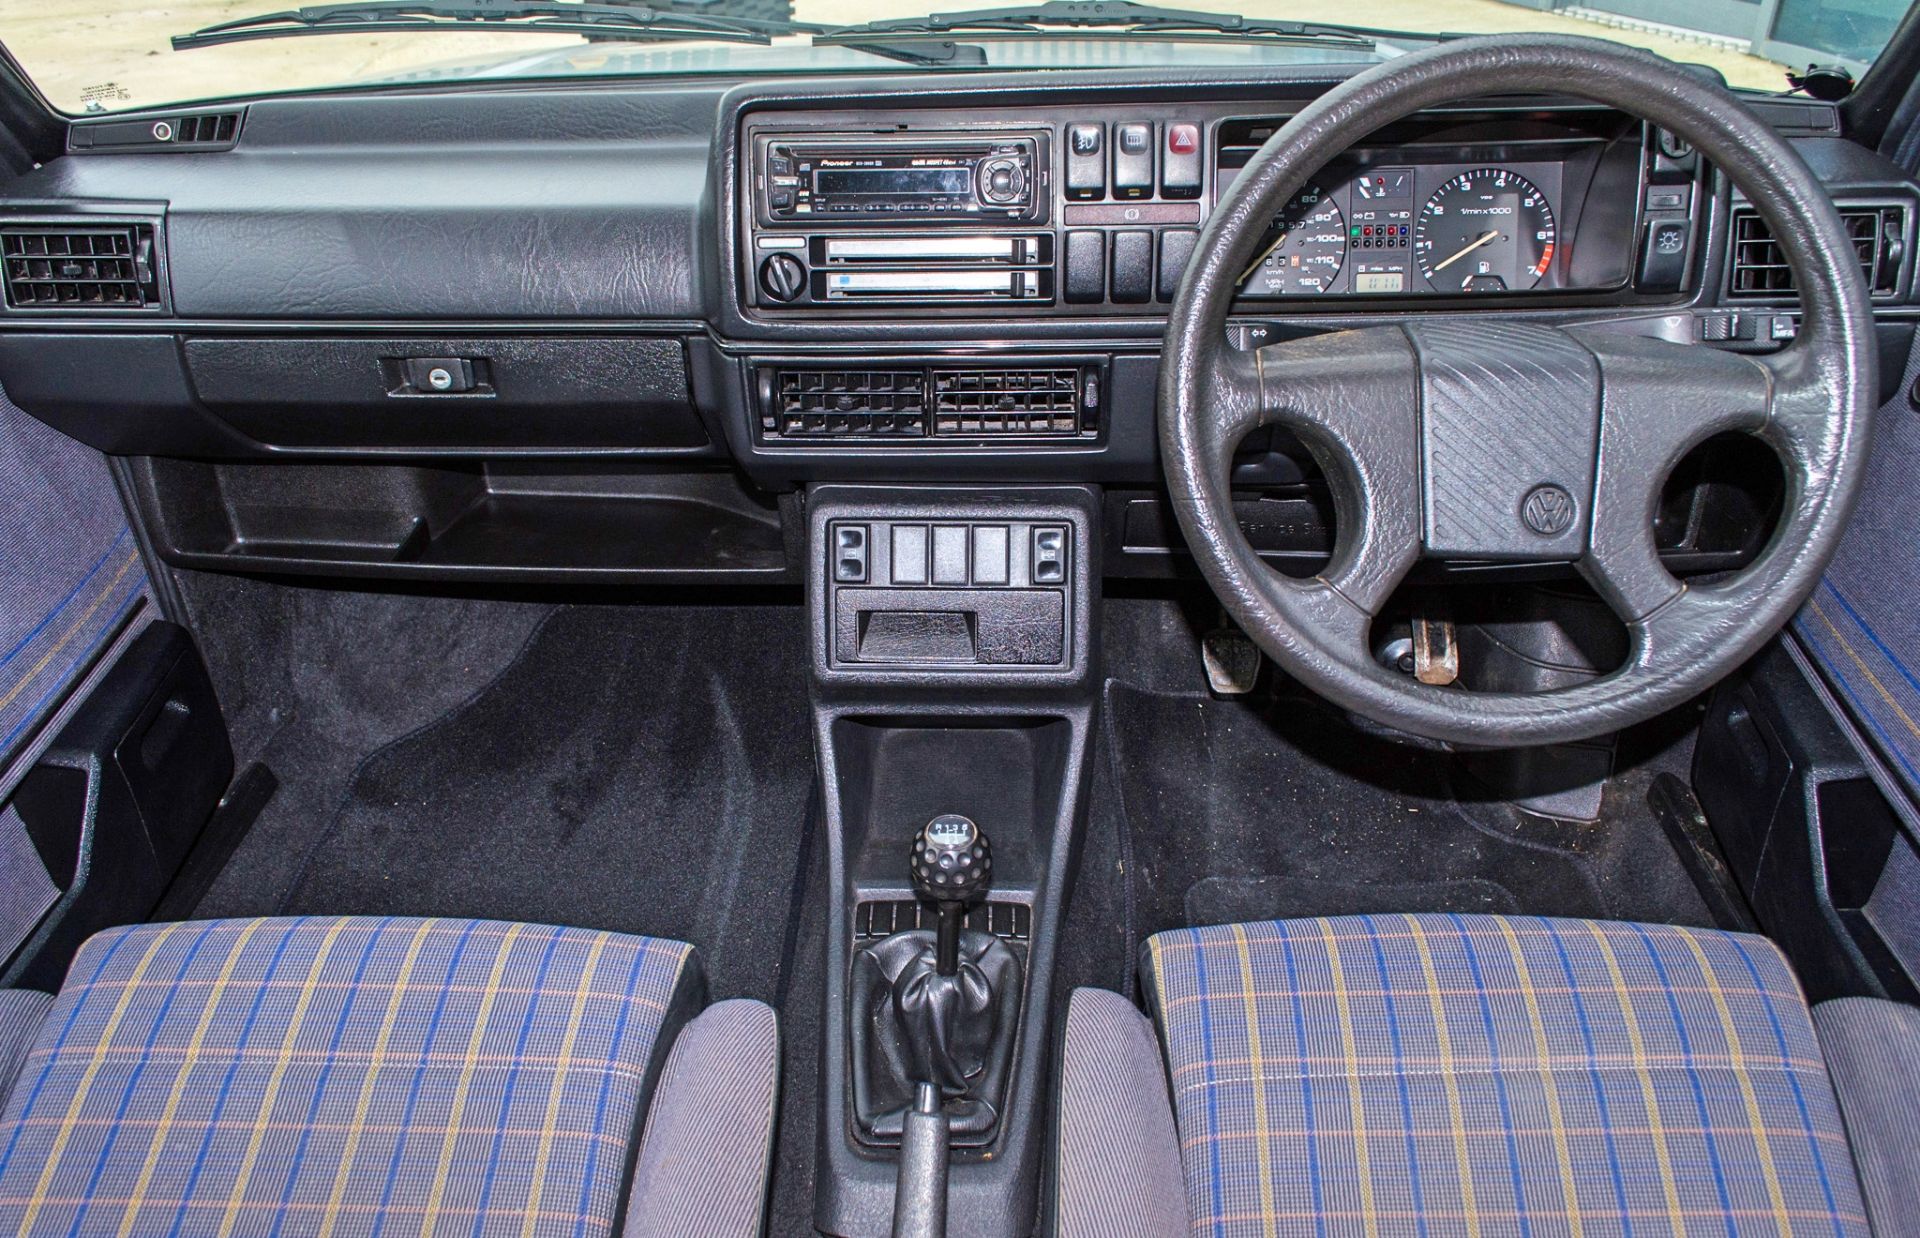 1989 Volkswagen Golf GTI 1.8 litre 3 door hatchback - Image 35 of 52